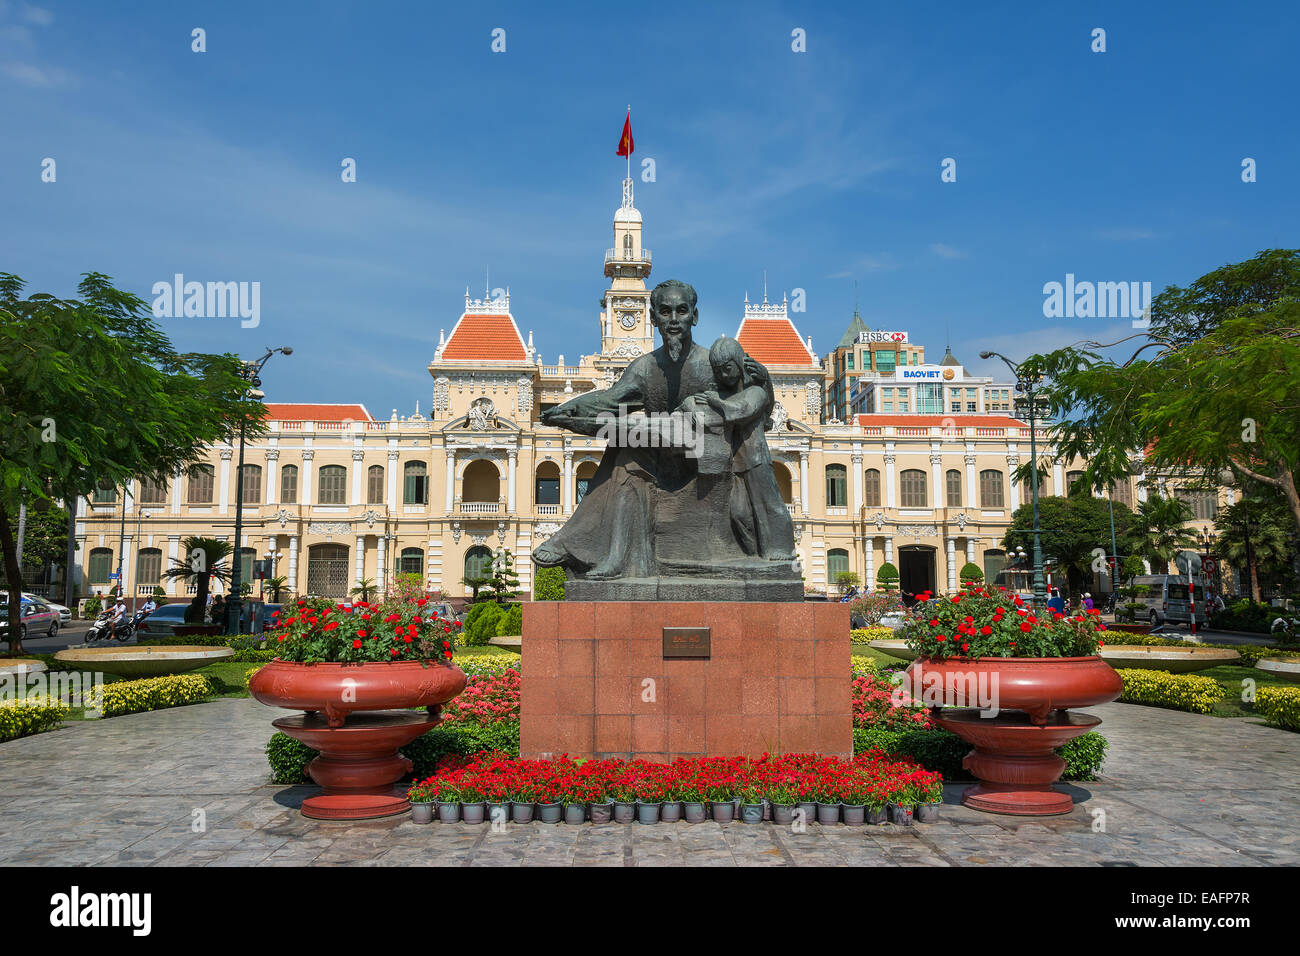 Il Municipio della Città di Ho Chi Minh Saigon Vietnam del sud-est asiatico. Foto Stock